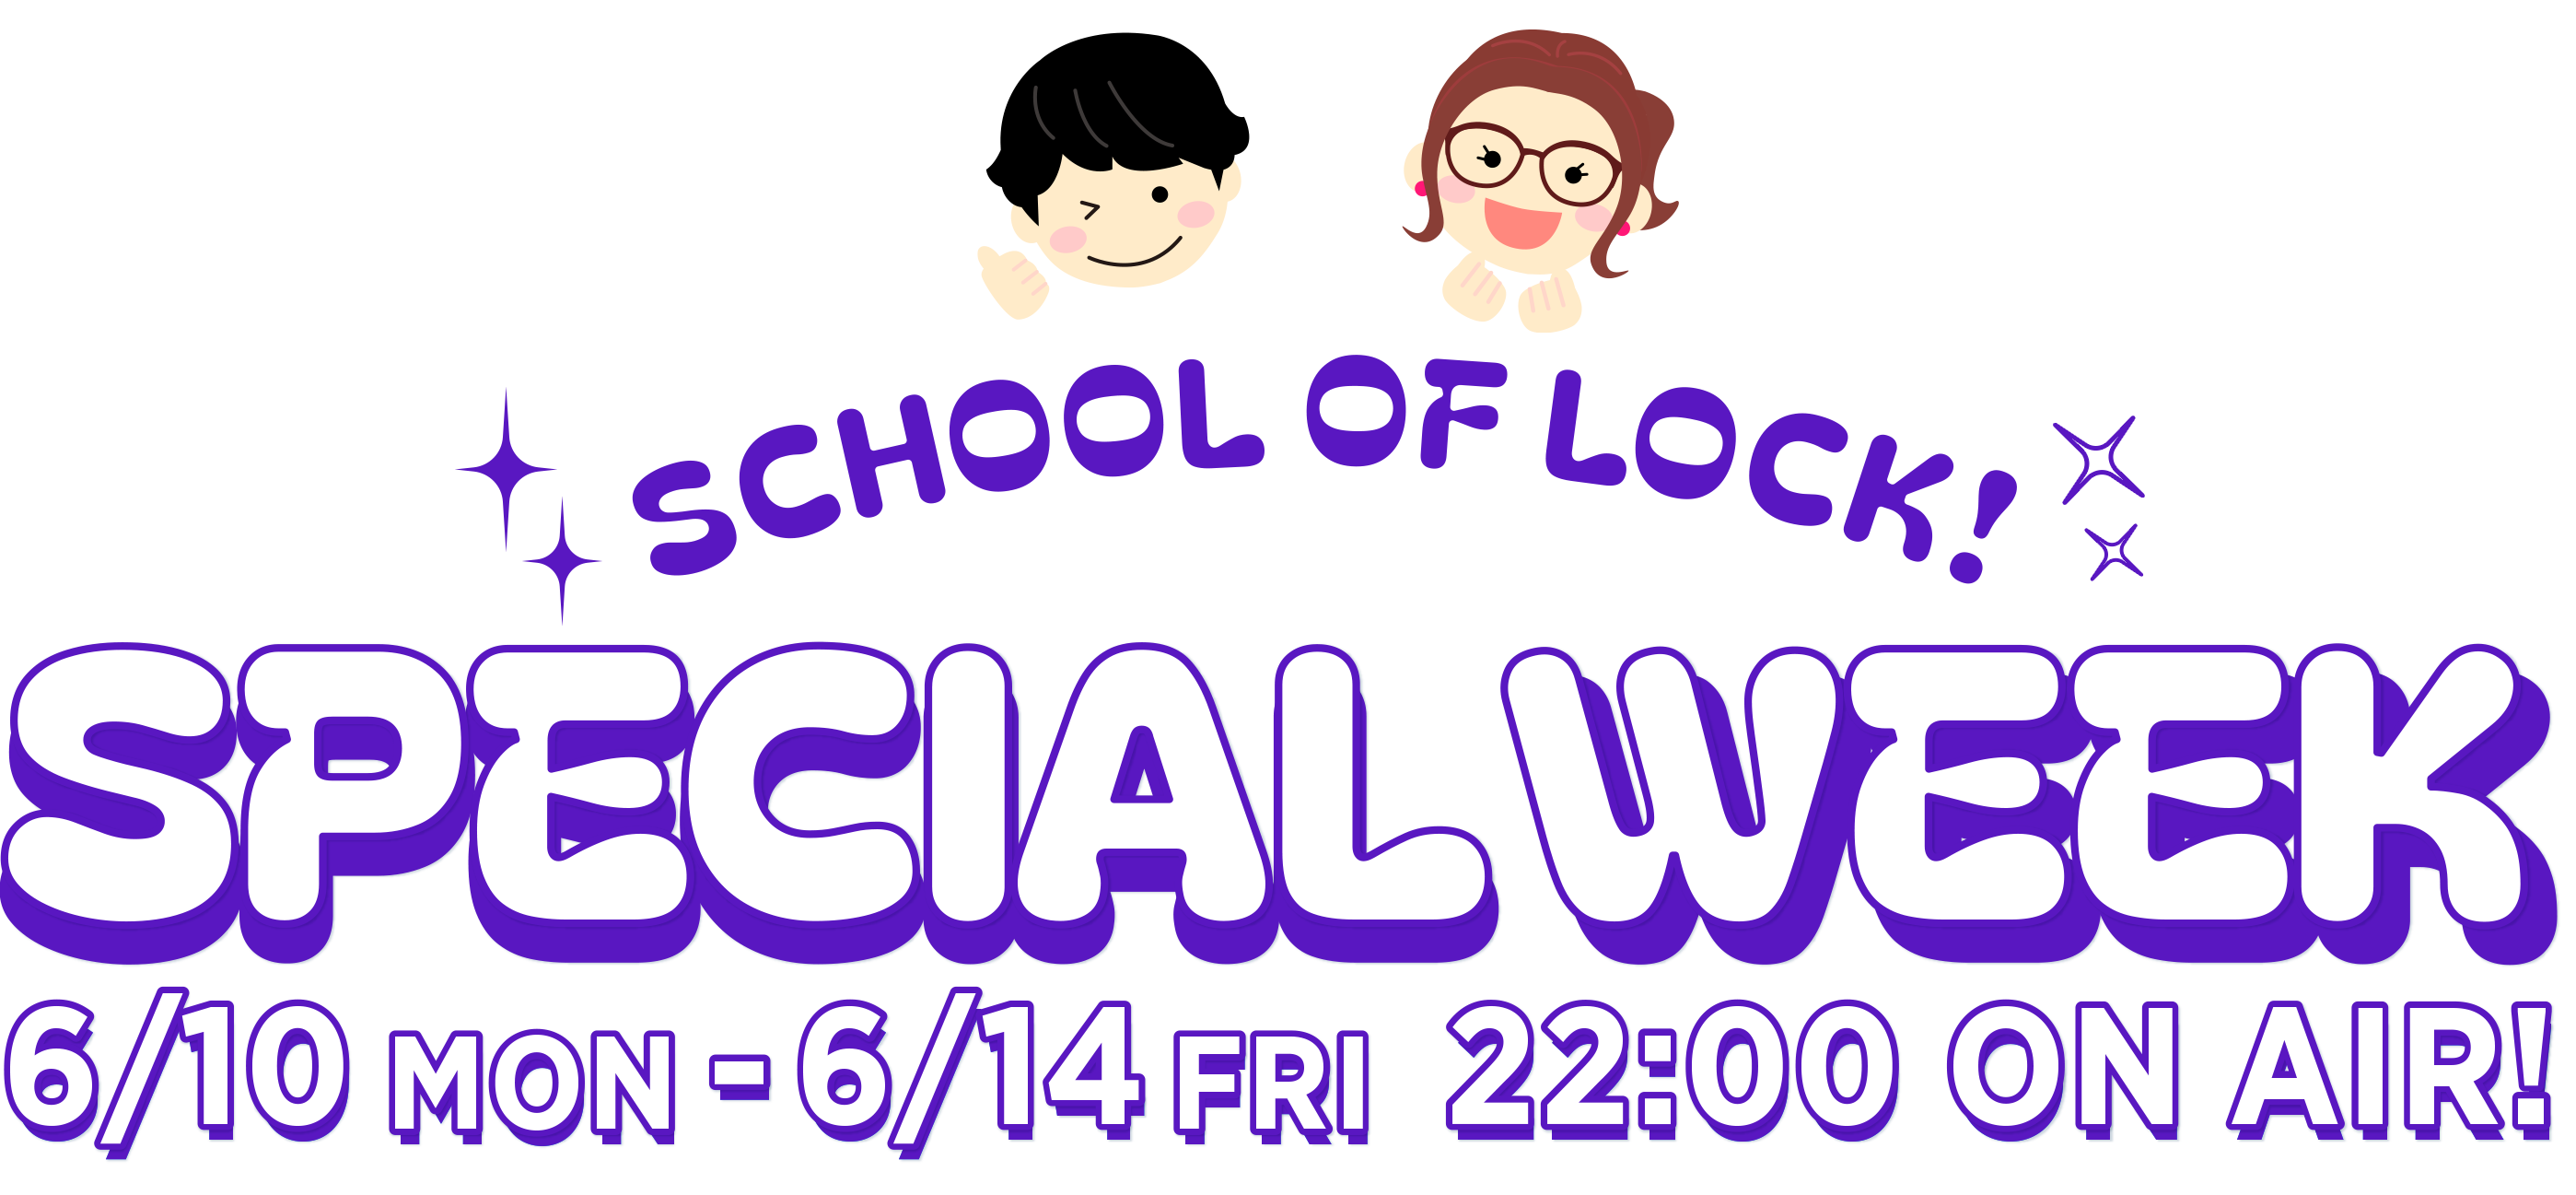 SCHOOL OF LOCK! SPECIAL WEEK 6.10 MON-6.14 FRI 22:00- ON AIR!